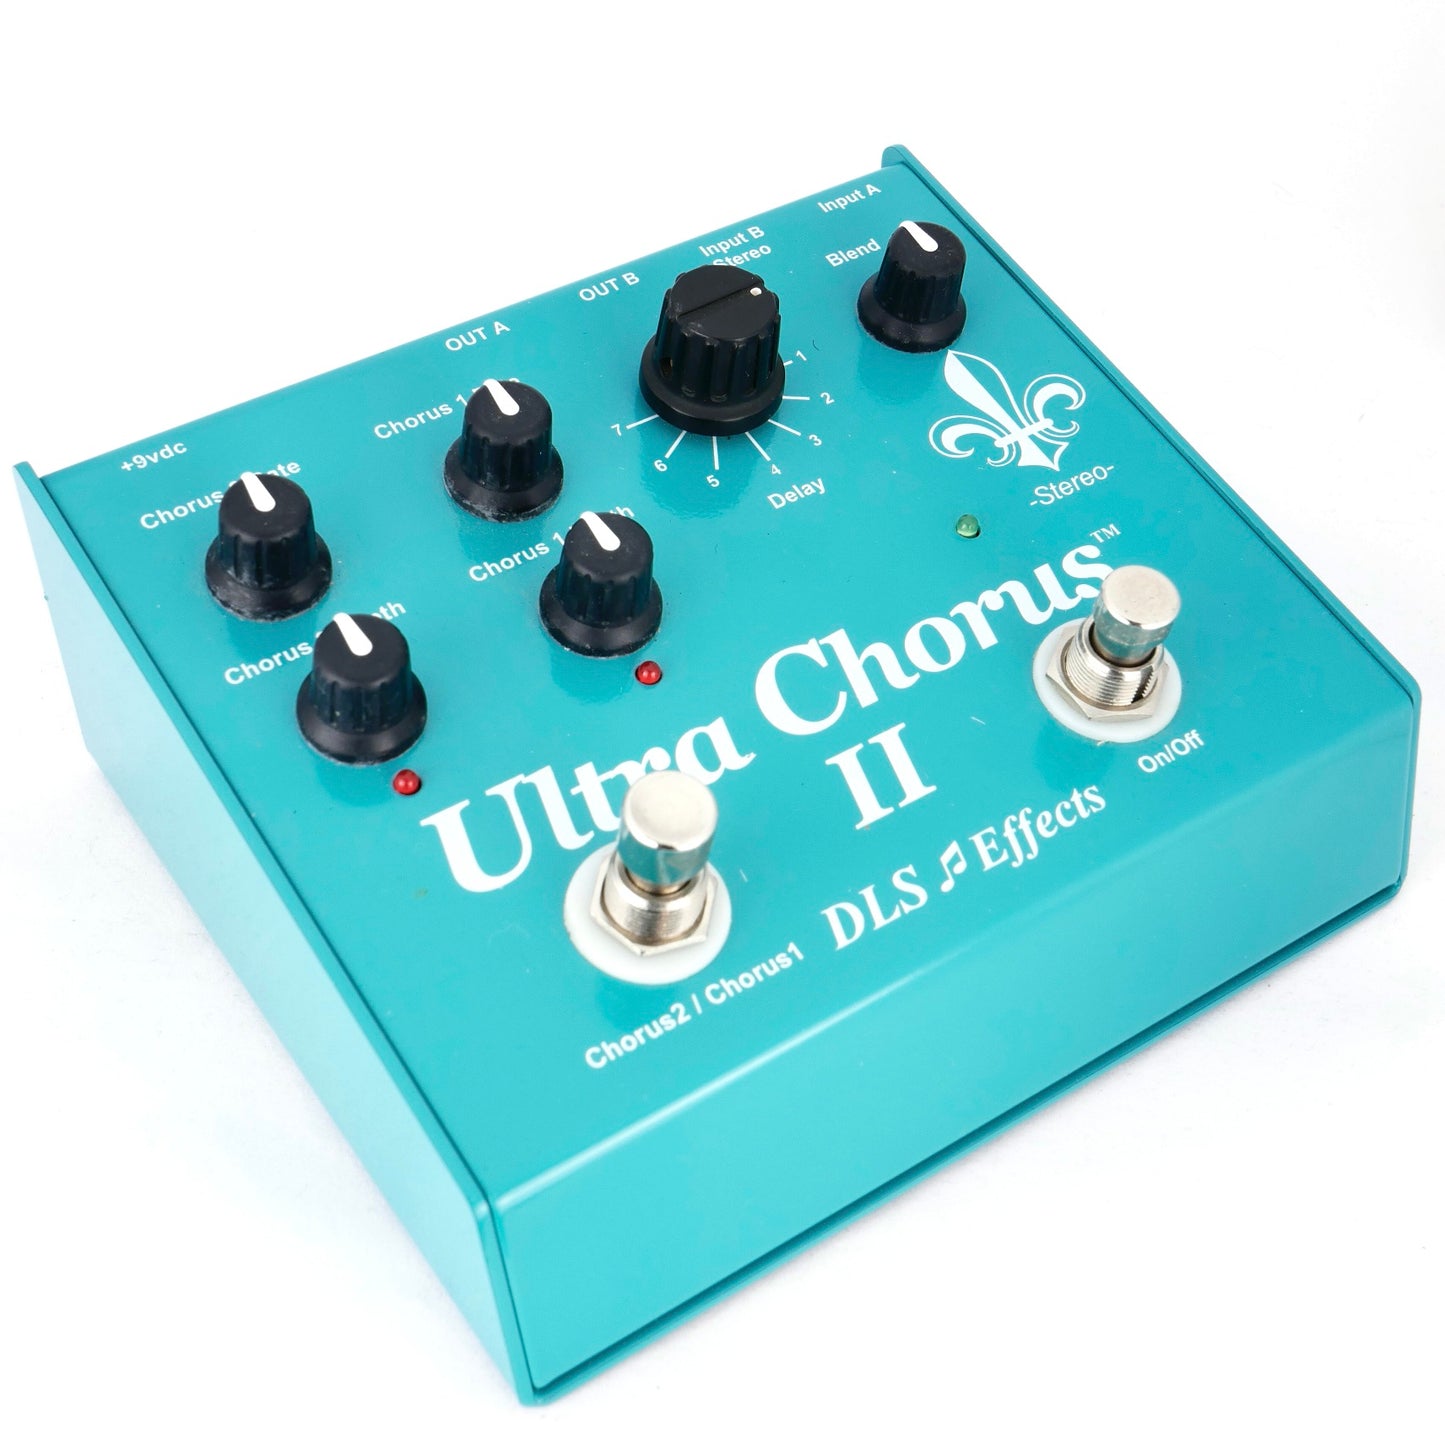 DLS Ultra Chorus II 2015